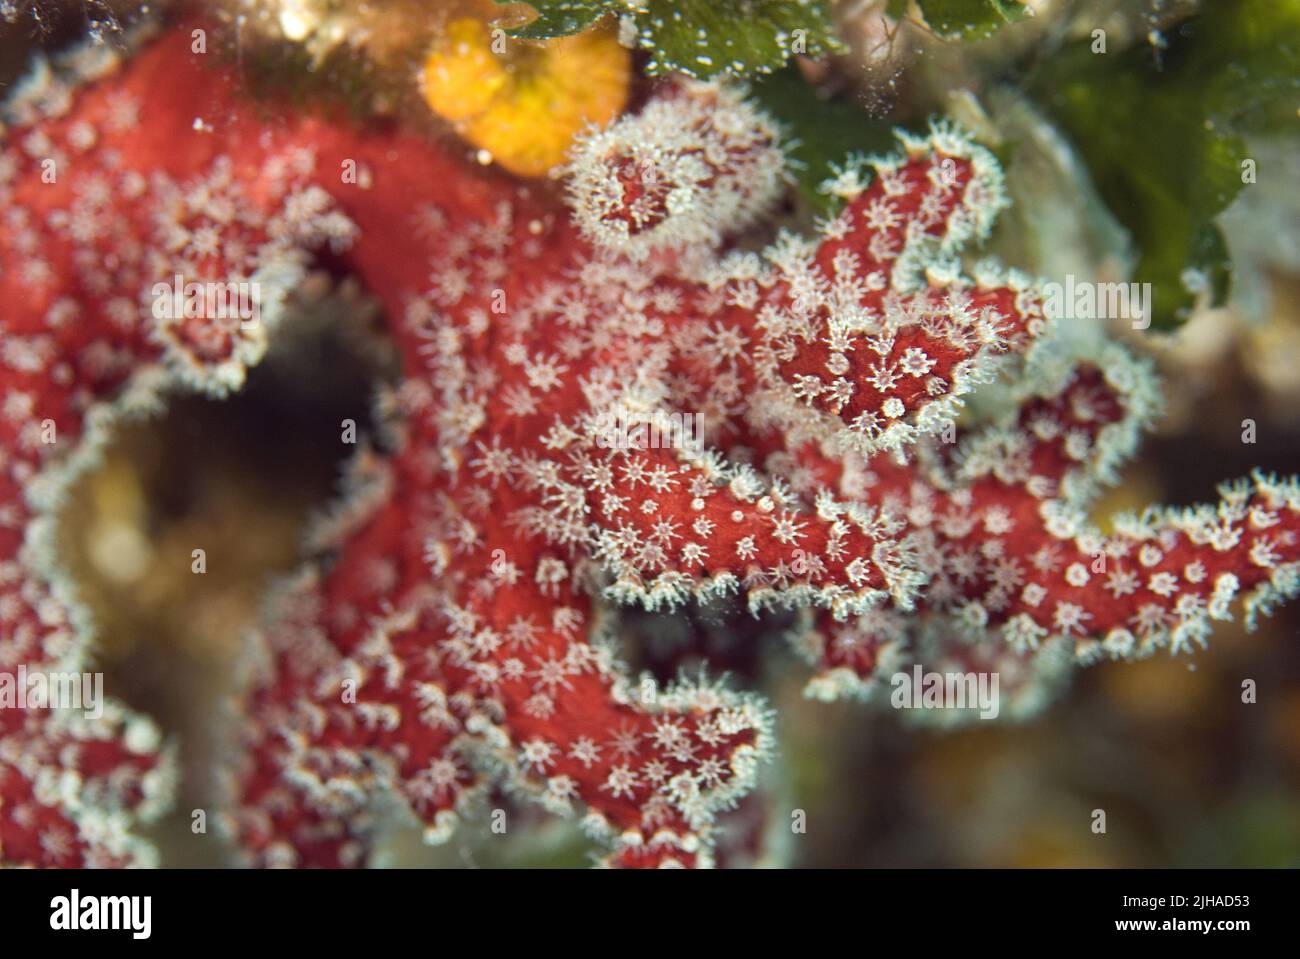 Red Dead man's Fingers - Alcyonium palmatum, wunderschöne rote Weichkorallen aus den Mittelmeer-Riffen, Insel Pag, Kroatien. Stockfoto